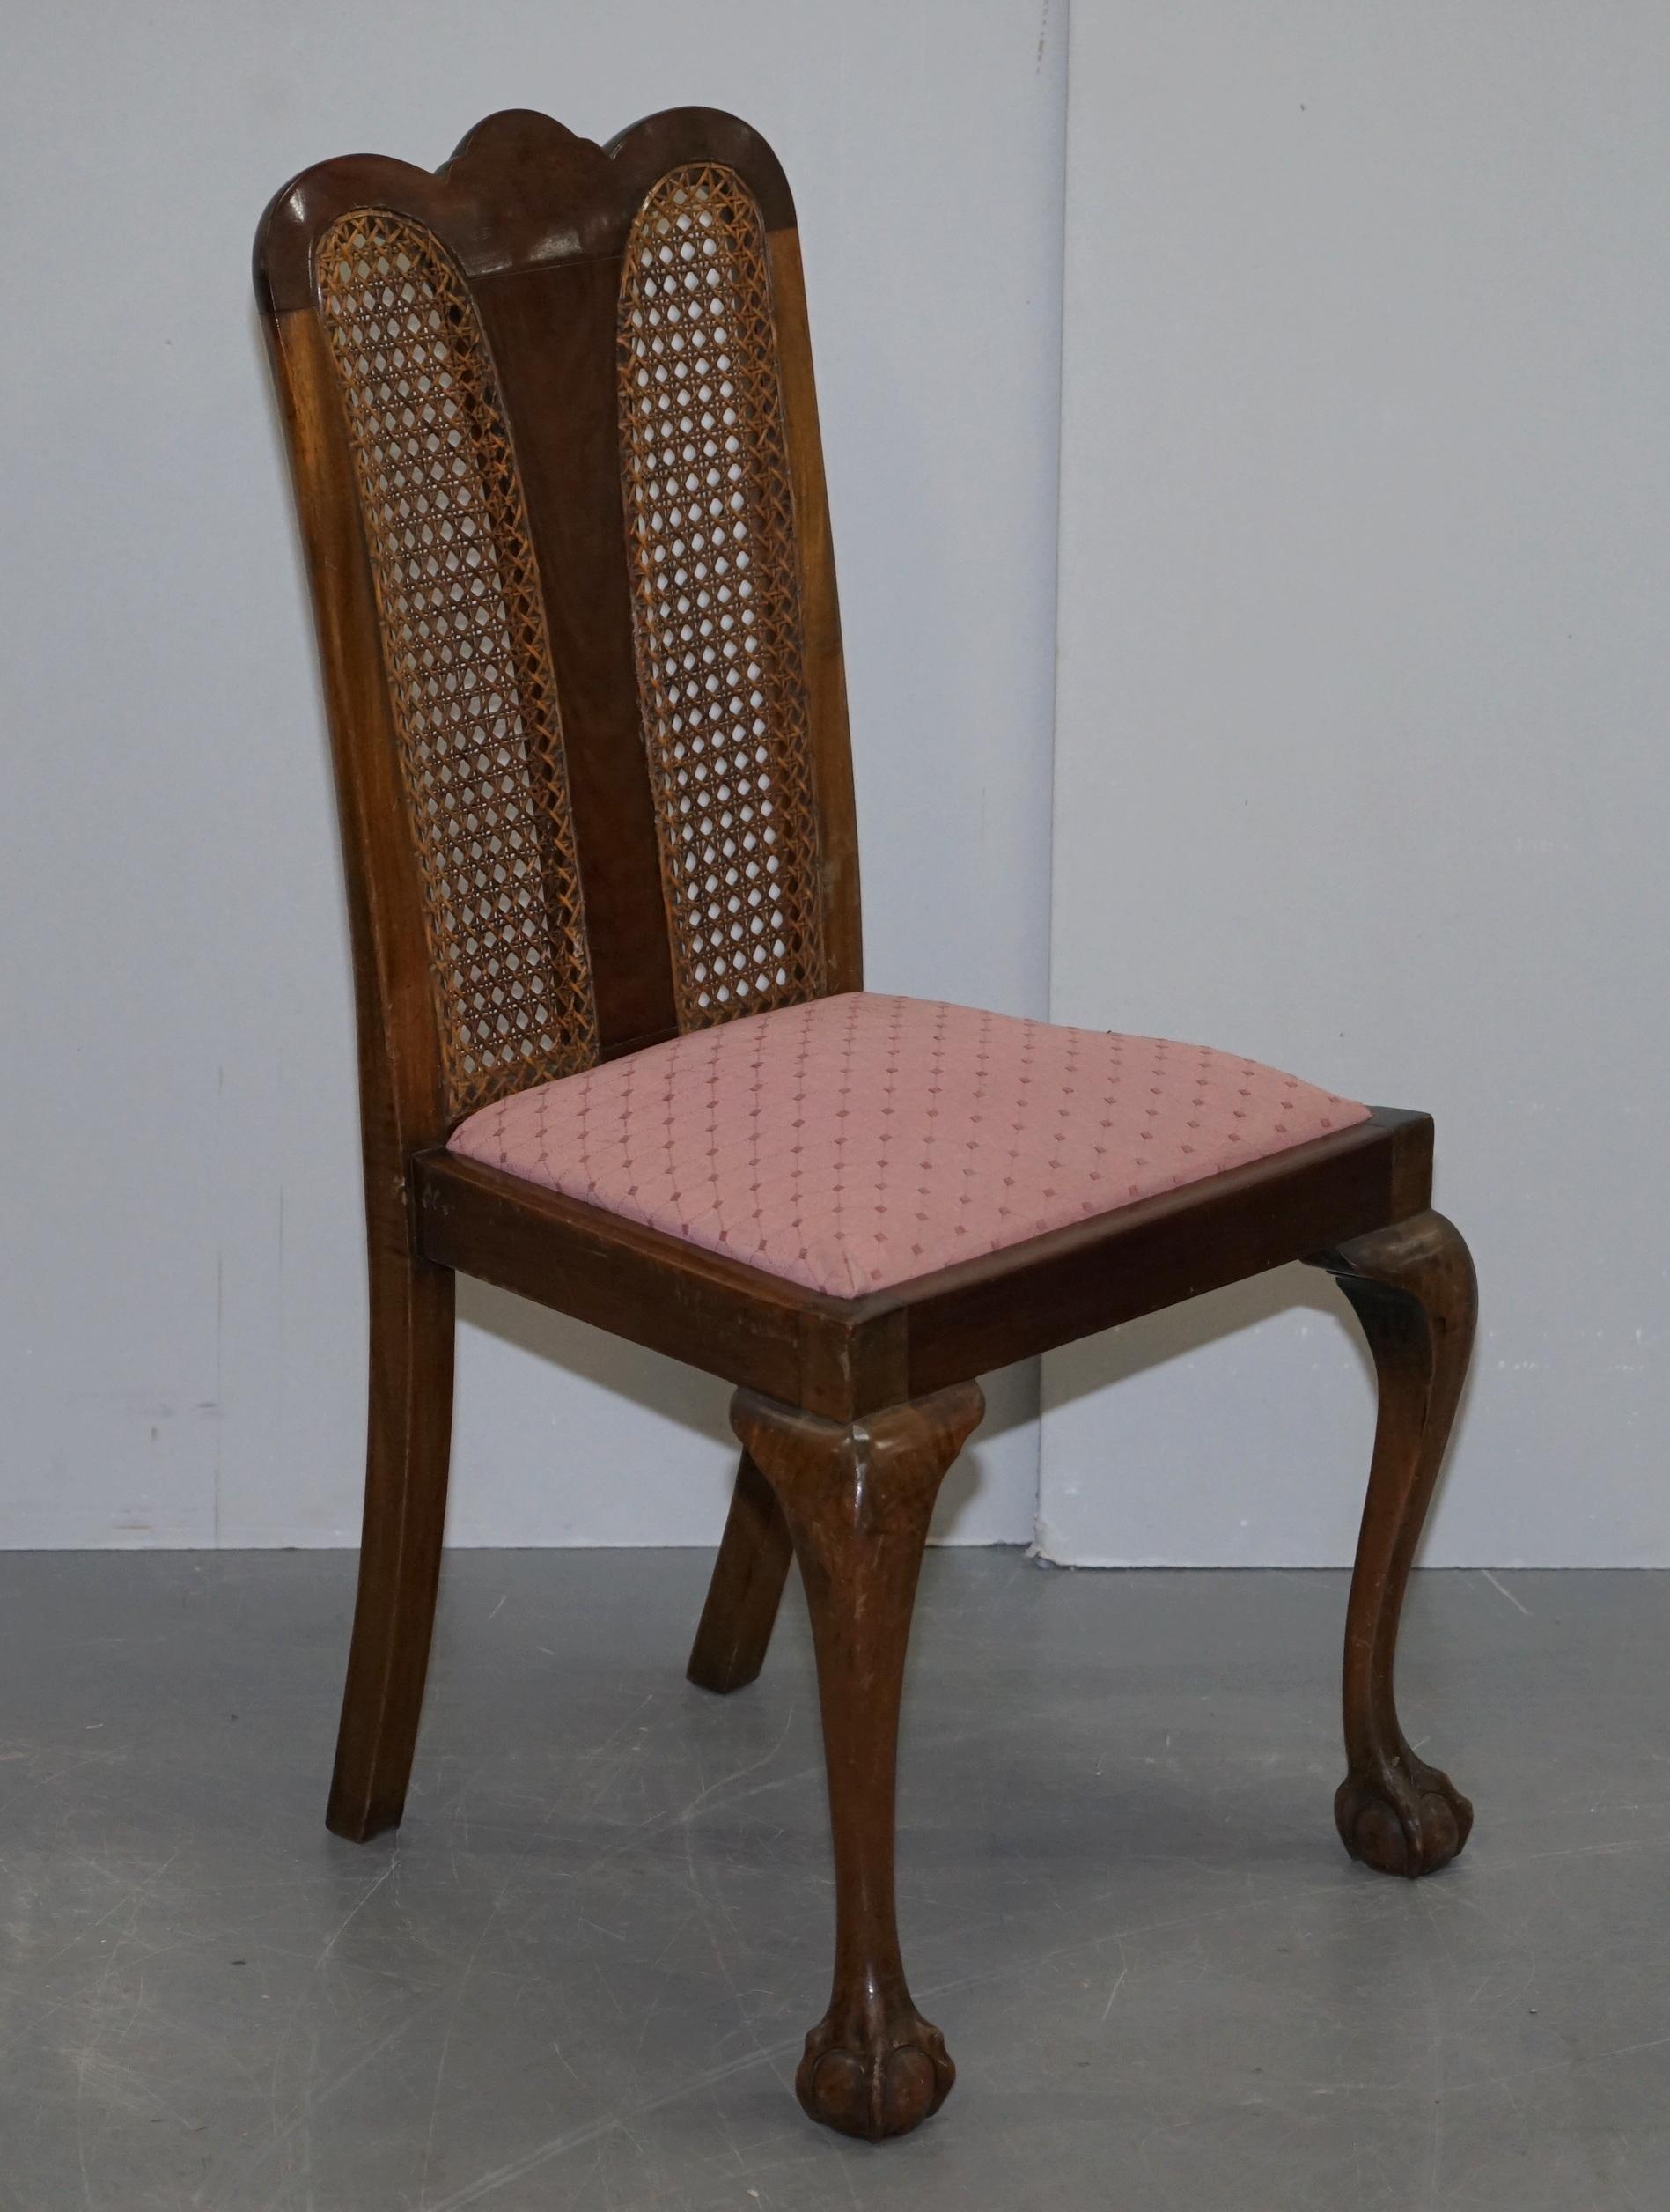 Nous avons le plaisir de proposer à la vente cette paire de chaises d'appoint en acajou et bergère, datant des années 1940, avec des pieds en forme de griffes et de boules

Une paire de chaises d'appoint de très belle apparence, bien faites et